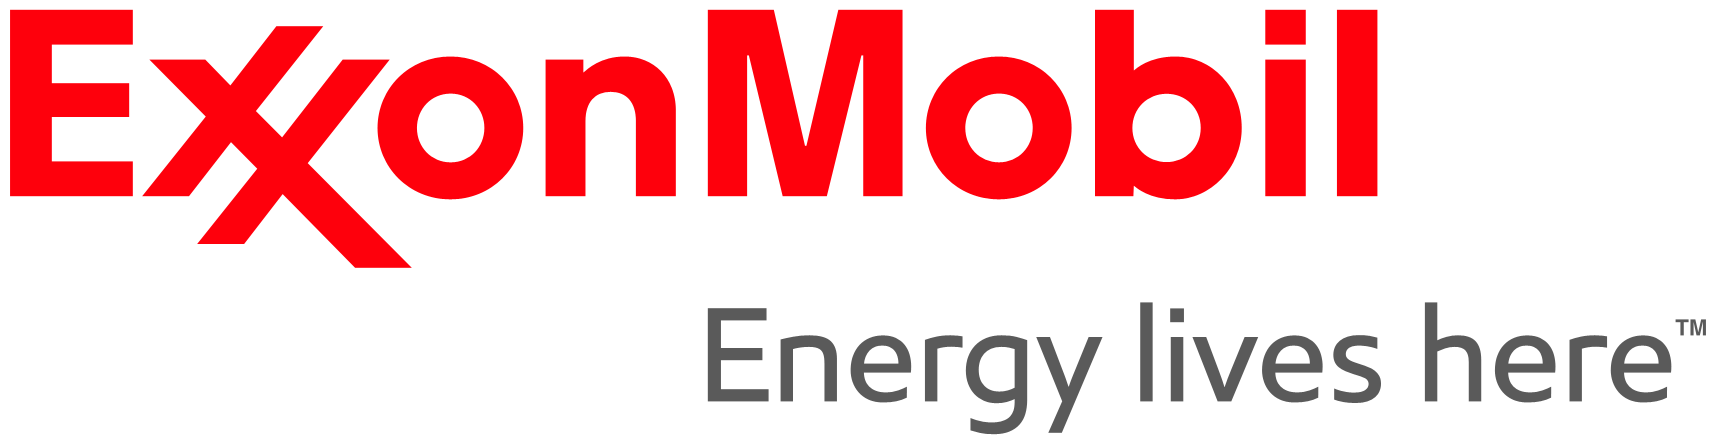 Old Exxon Logo - ExxonMobil Singapore